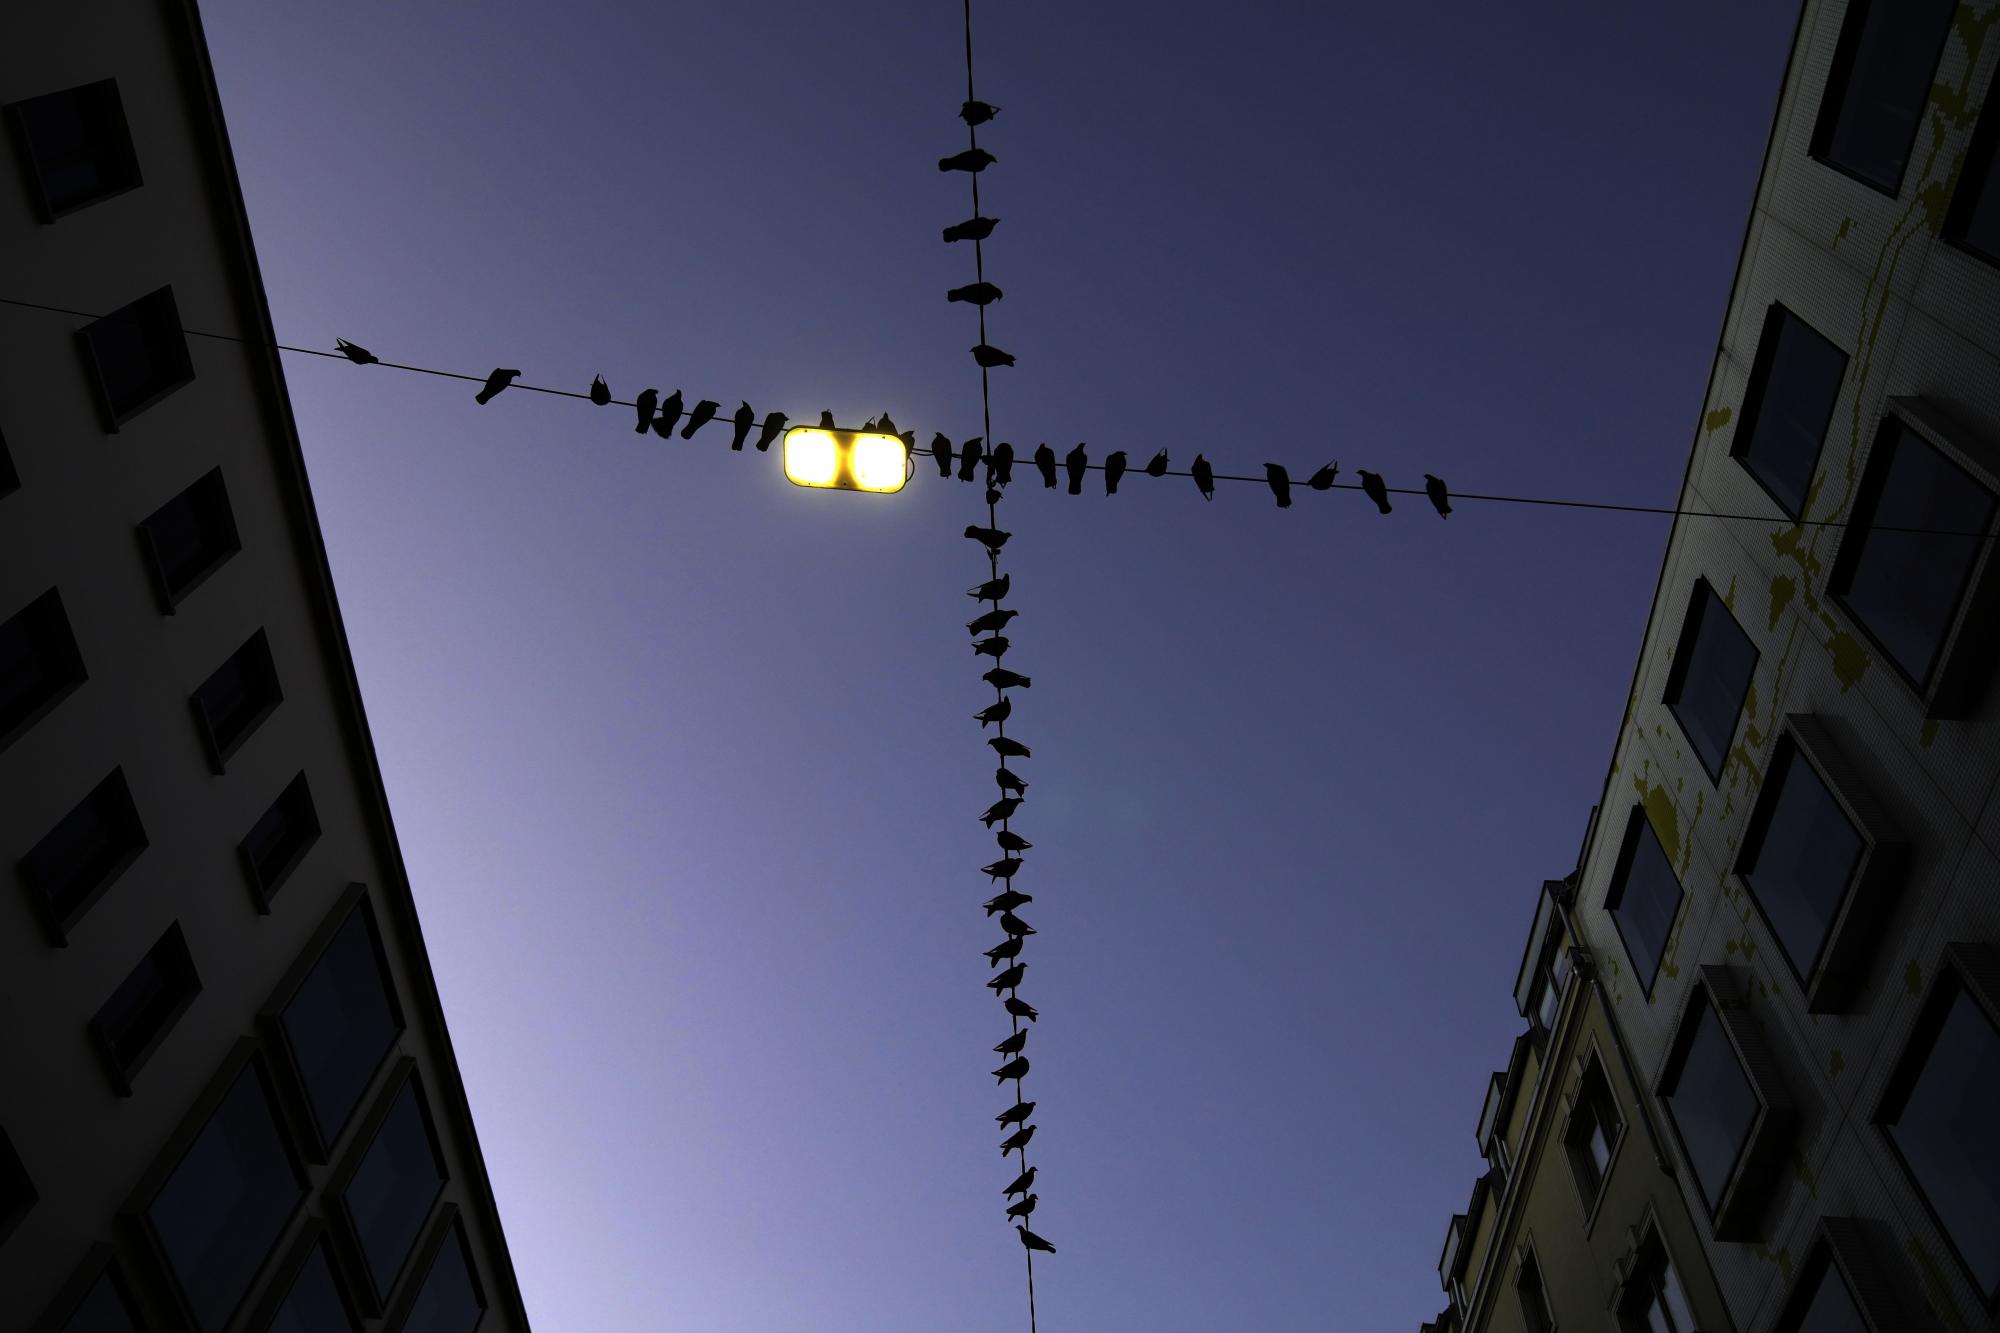 Las palomas se sientan en cables eléctricos temprano en la mañana en Innsbruck, Austria, el sábado 20 de noviembre de 2021. (AP Photo / Matthias Schrader)